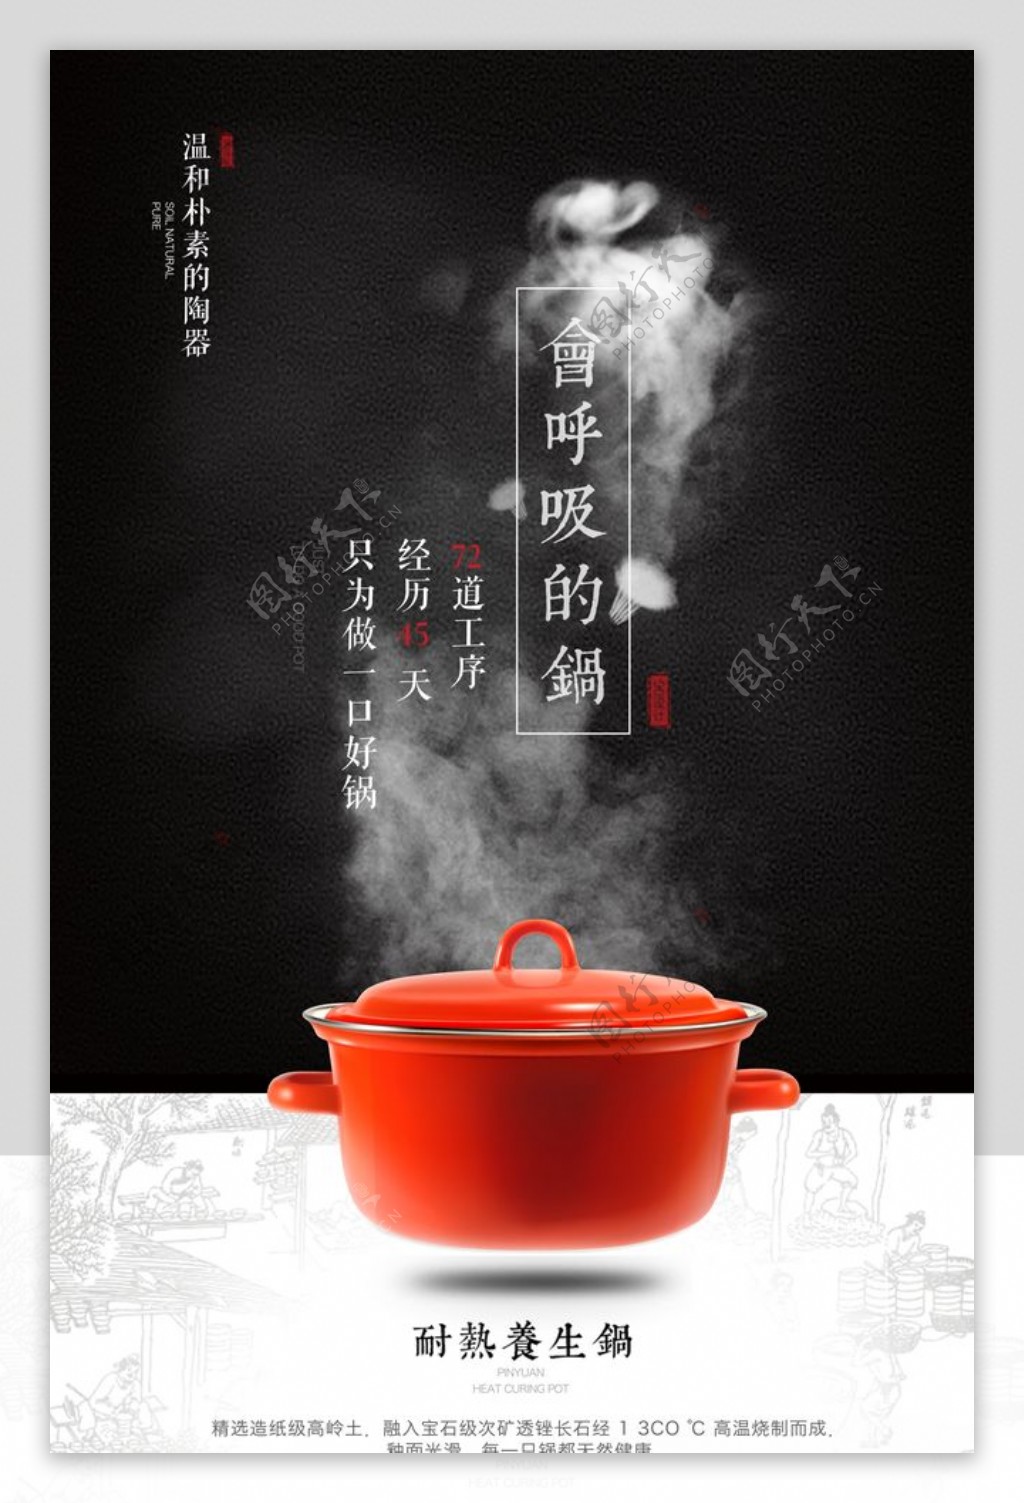 厨房用品电炖锅广告海报设计图片